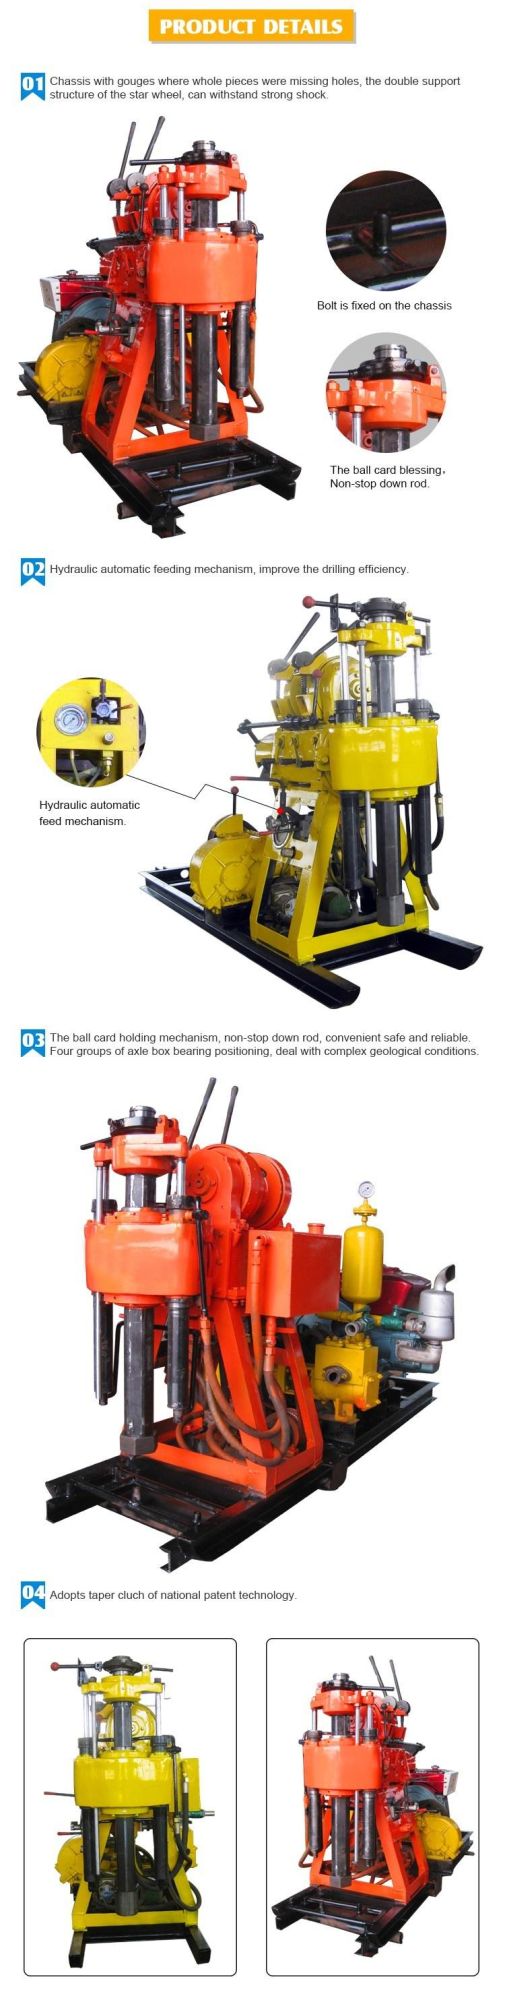 D Miningwell High Performance Hz130y Hydraulic Borehole Drilling Machine